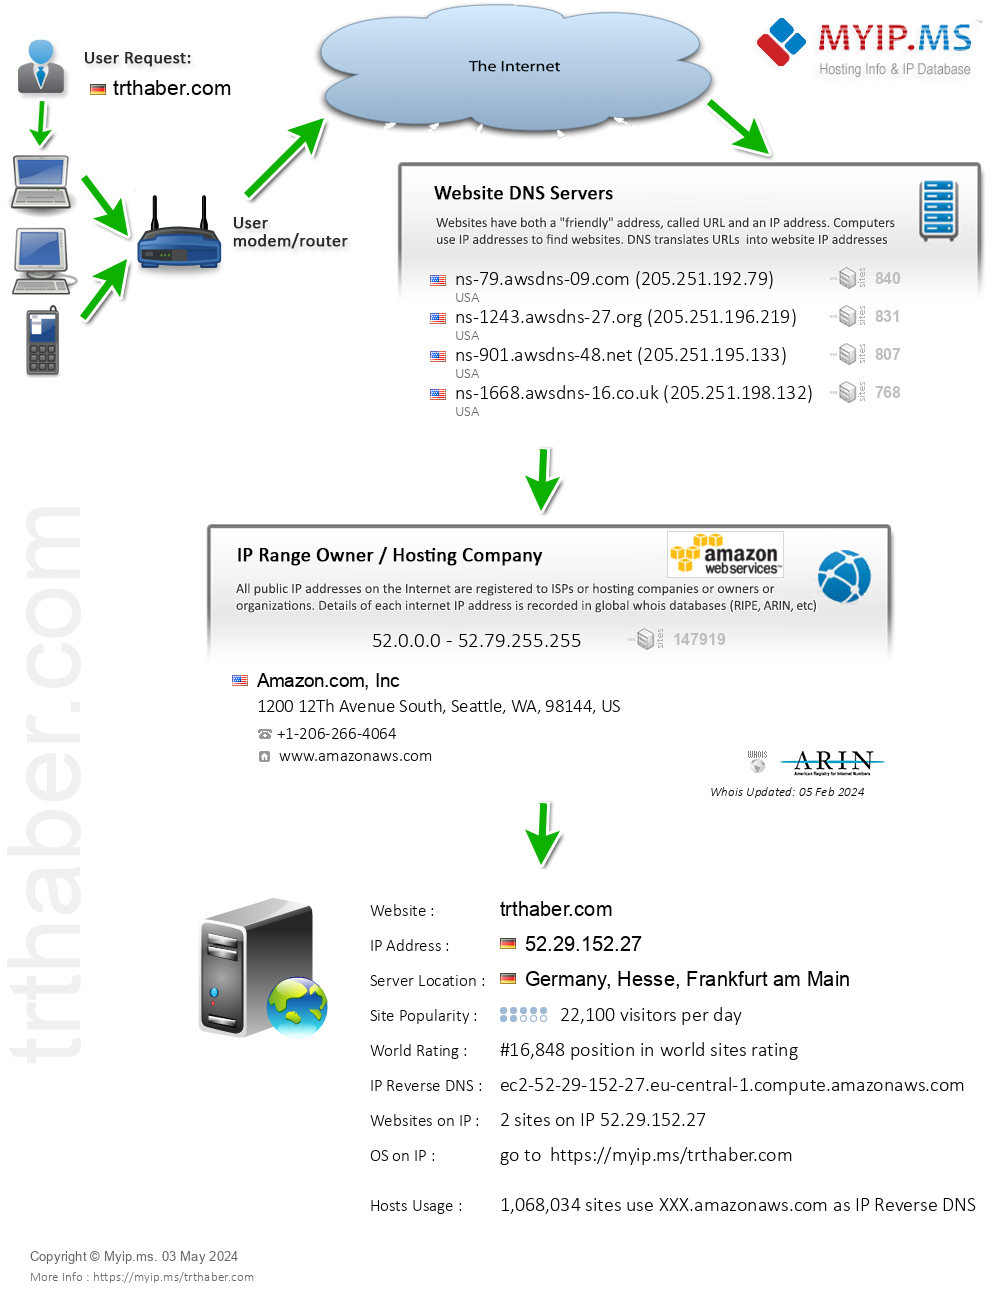 Trthaber.com - Website Hosting Visual IP Diagram